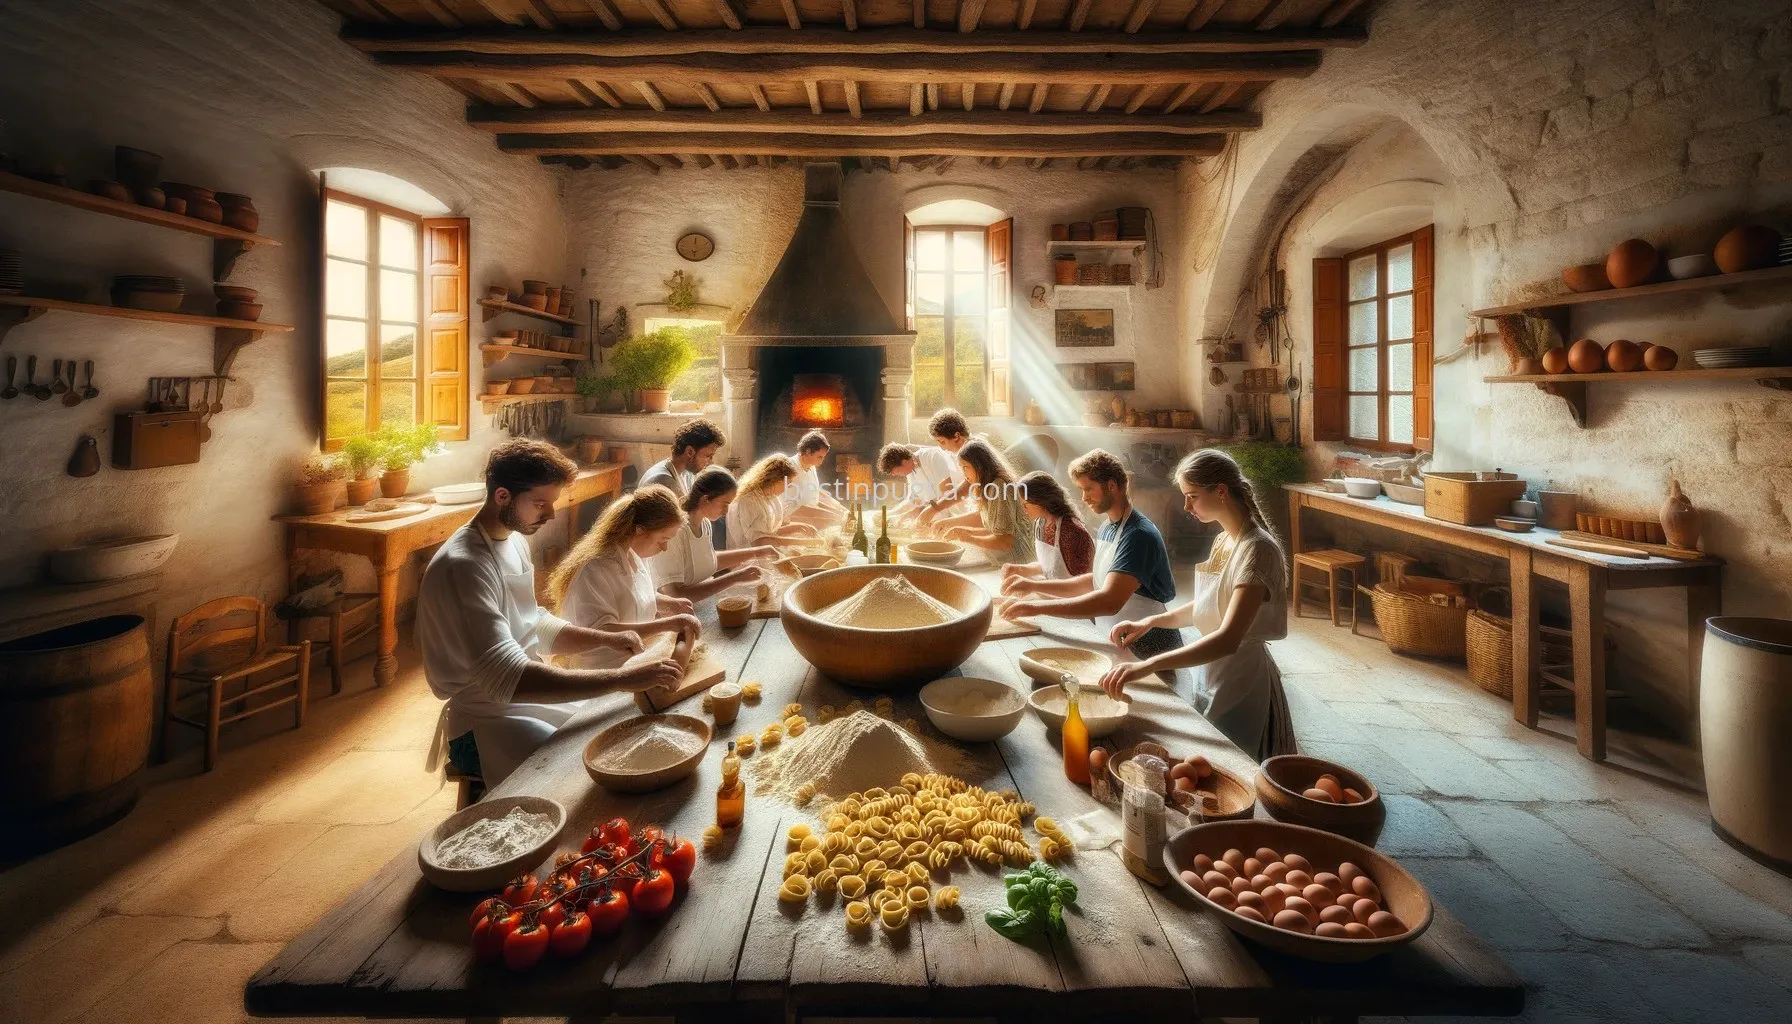 Learn the Art of Puglian Cuisine